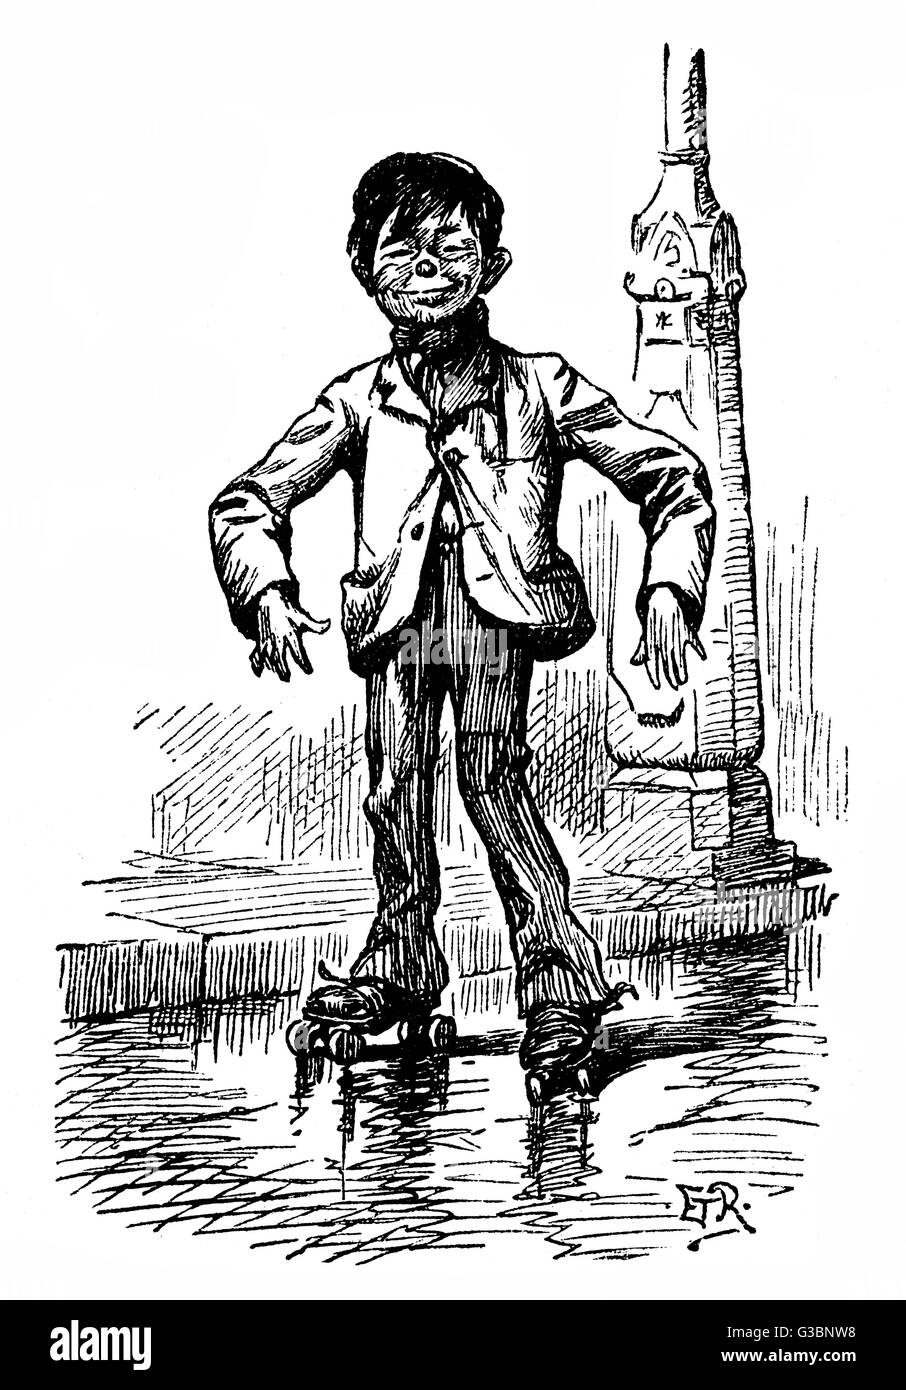 Ein Ganglie, langarmige junge, mit einem sehr selbstgefälligen Blick auf seinem Gesicht, genießt eine Lage der Roller-skating in einer Londoner Straße.       Datum: 1892 Stockfoto